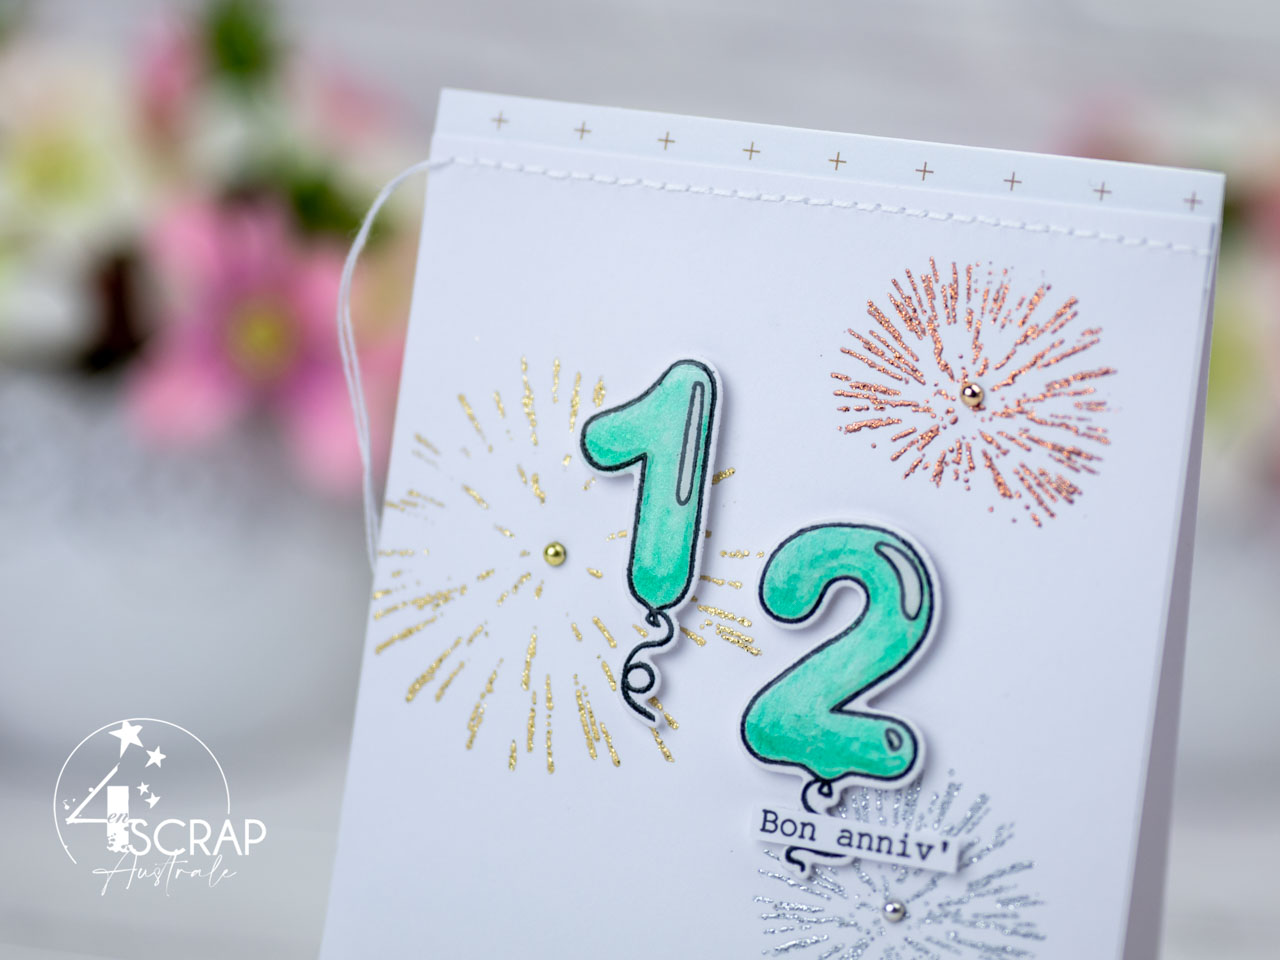 Création d'une carte d'anniversaire avec le chiffre 12 an ballons, feux d'artifices et définition pour la collection anniversaire de 4enscrap.